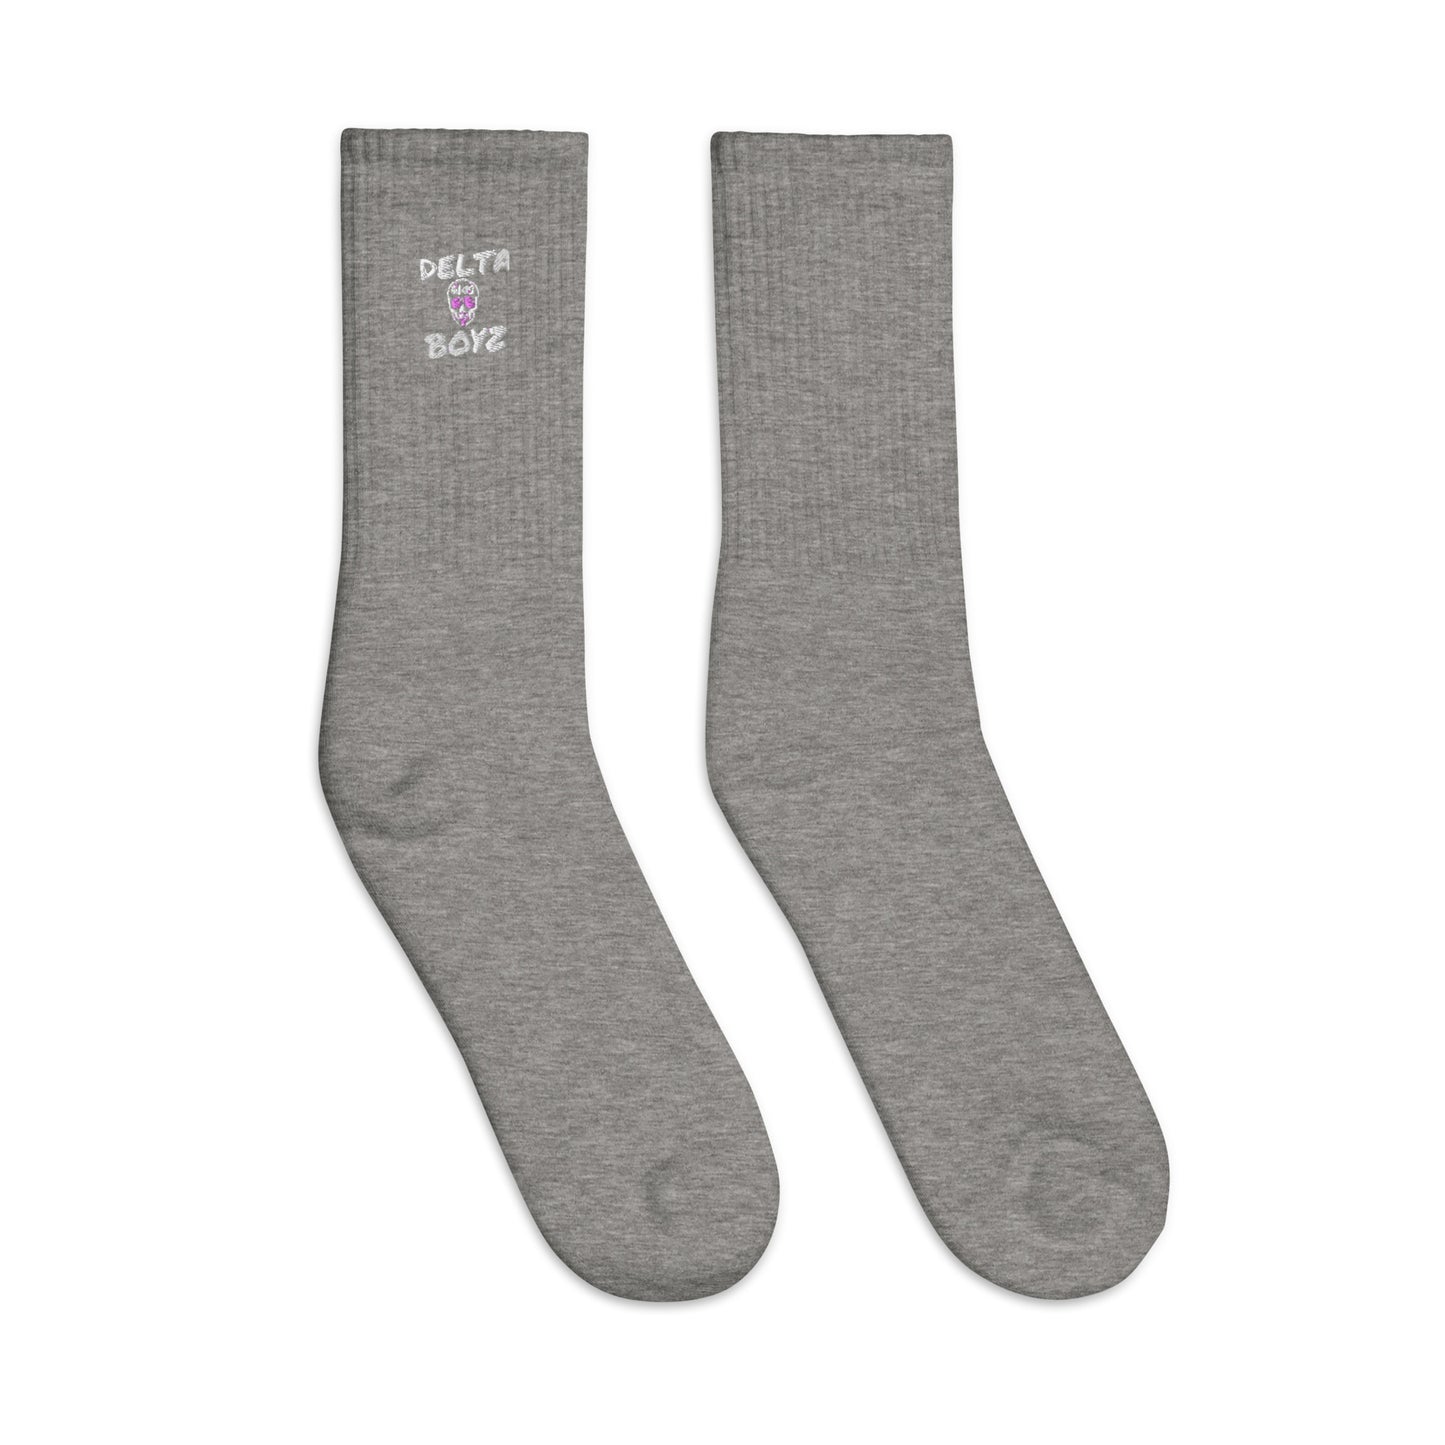 Delta Boyz Embroidered socks